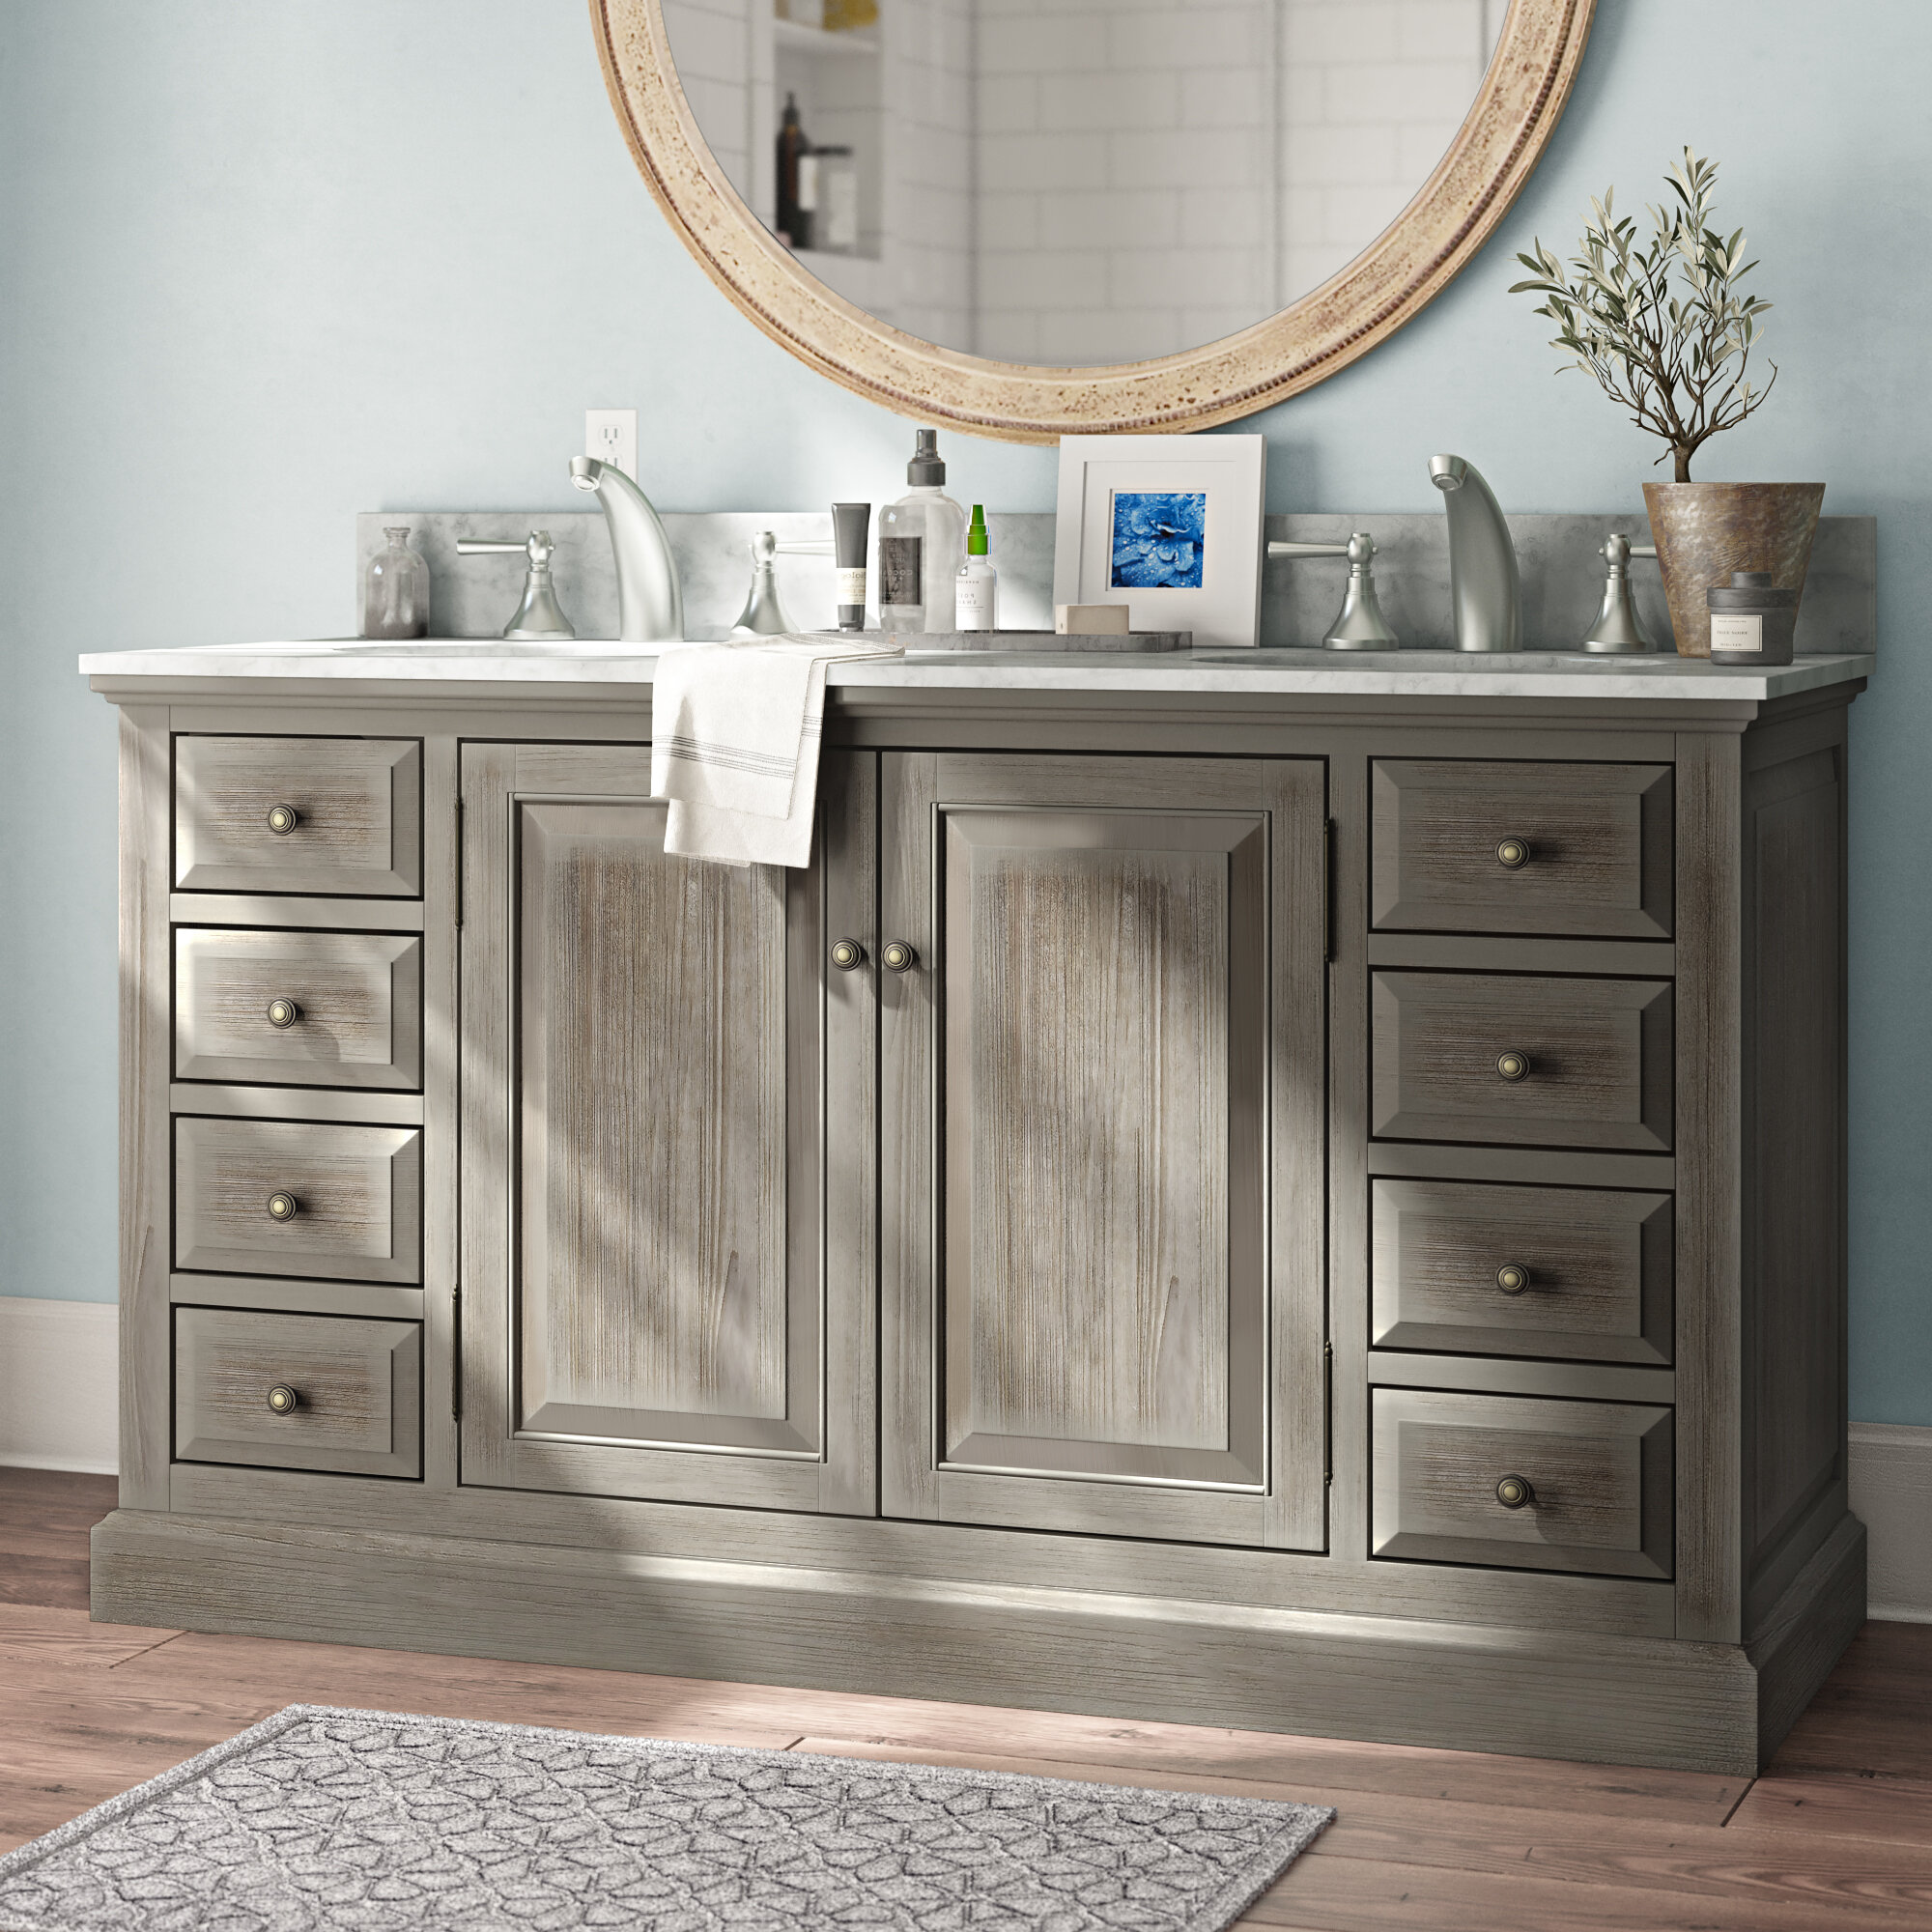 Darby Home Co Plympton 61 Double Bathroom Vanity Set Reviews Wayfair